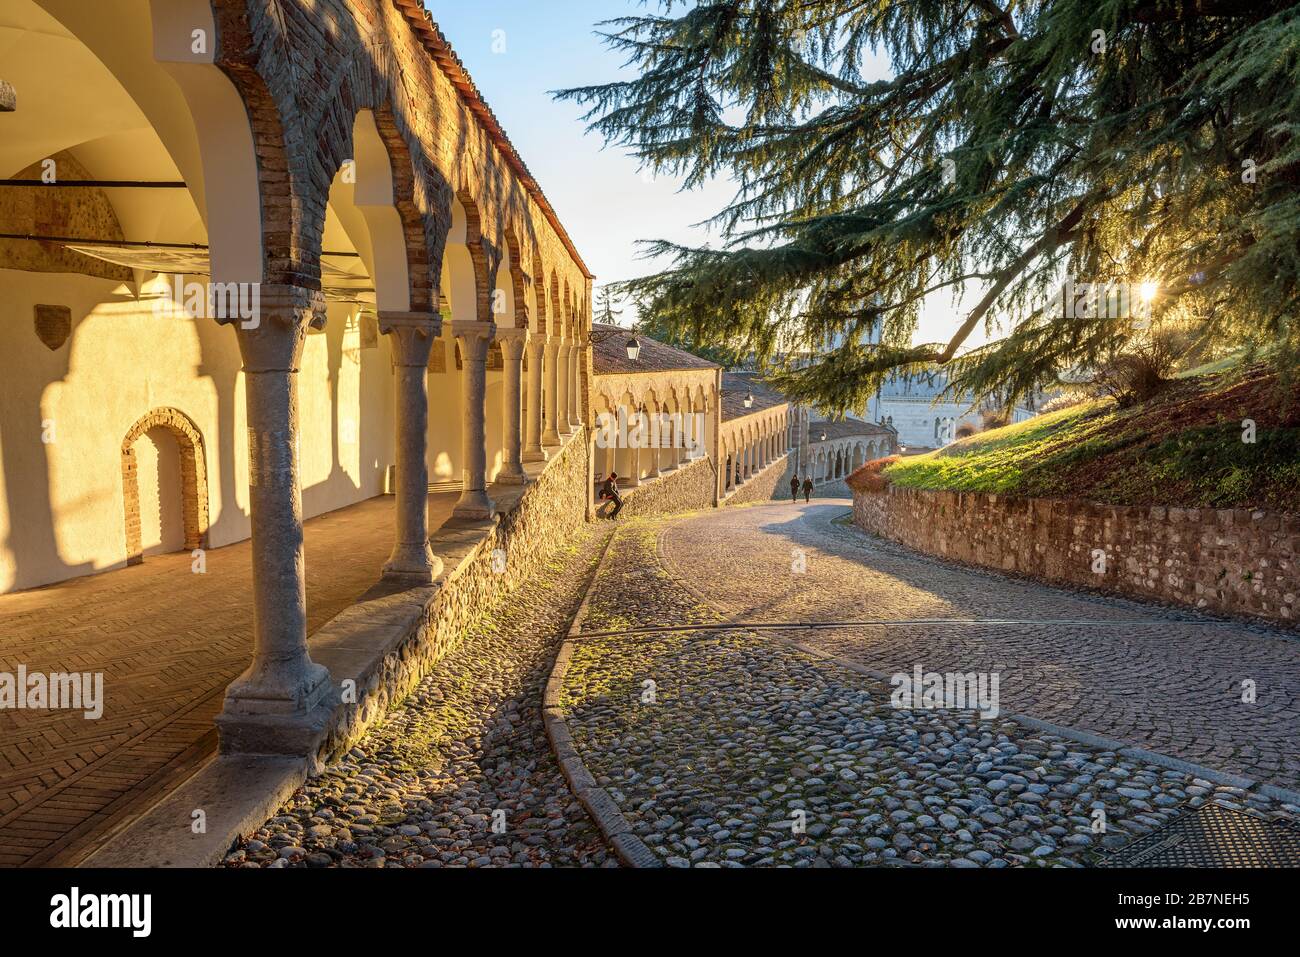 Kolonnade und alter Pfad in der Burg von Udine bei Sonnenuntergang. Schöne italienische Architektur. Friaul Julisch Venetien, Italien. Stockfoto